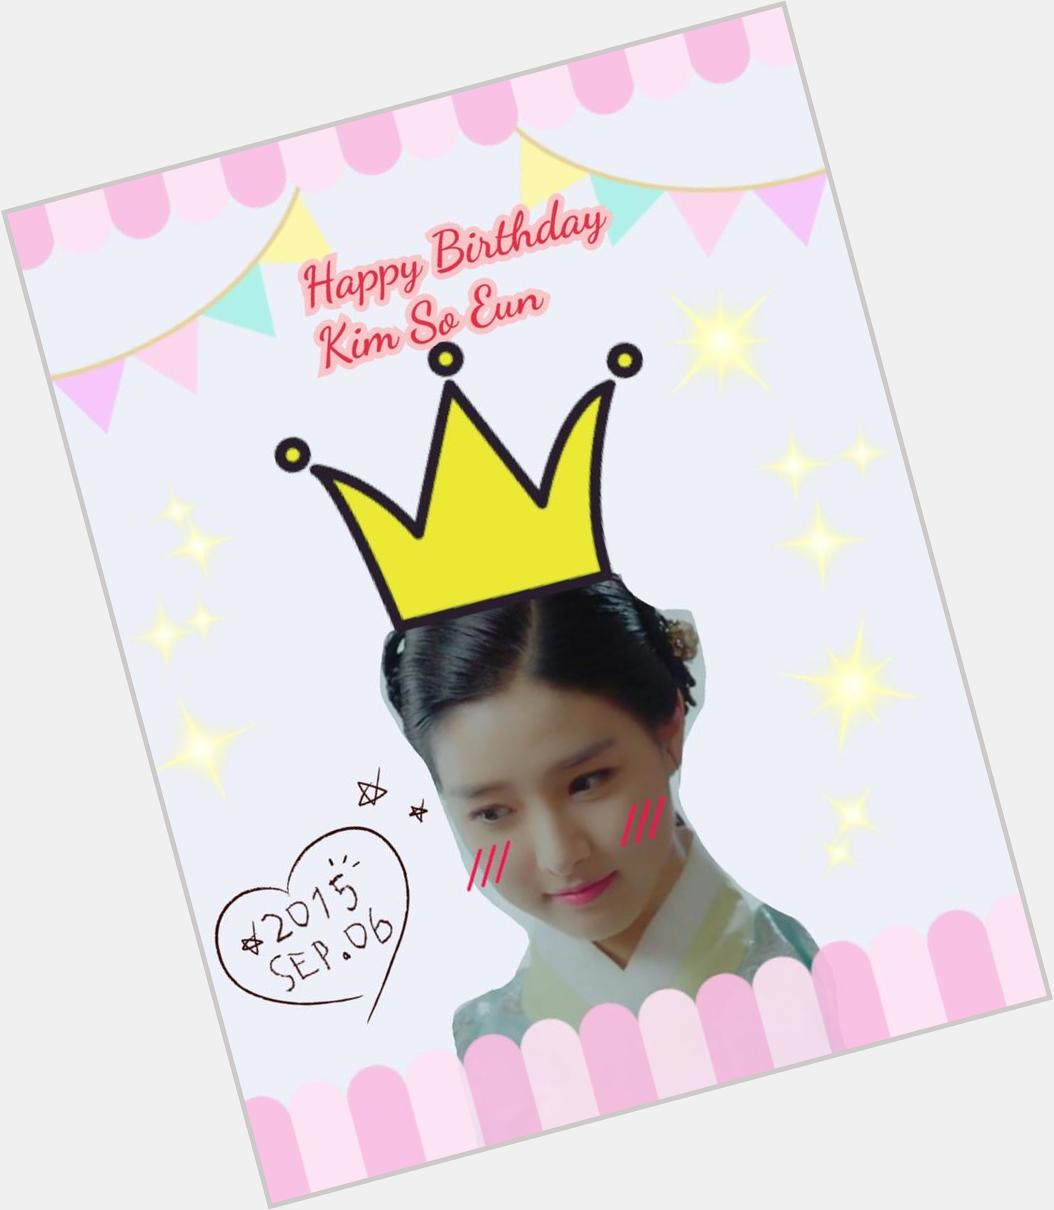           Happy birthday Kim So Eun      